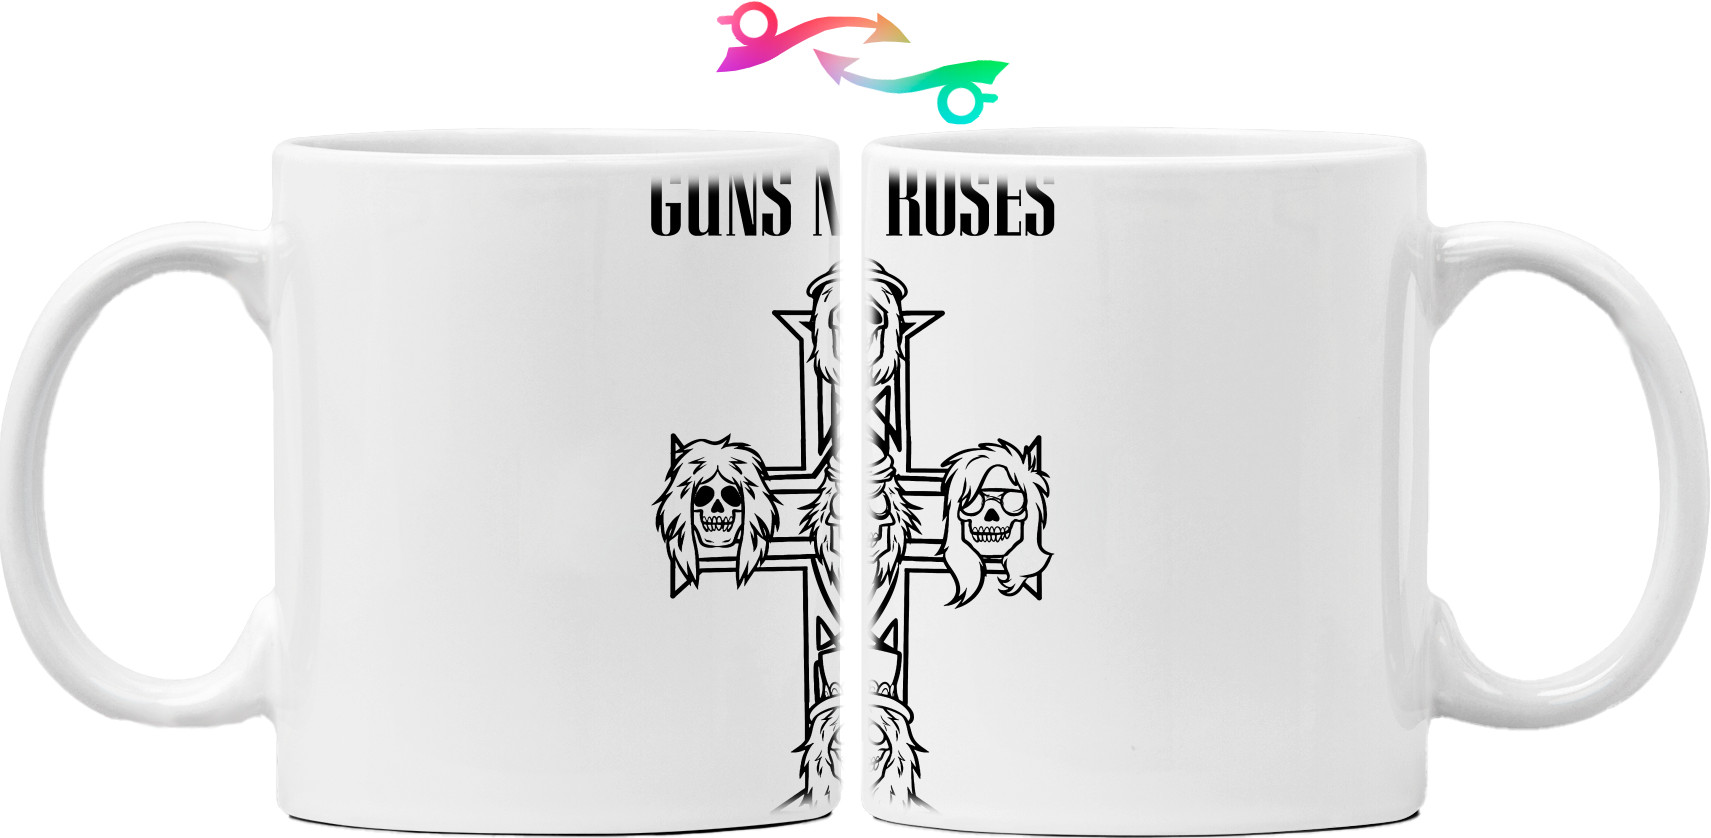 Guns n Roses - Mug - Guns n roses крест - Mfest